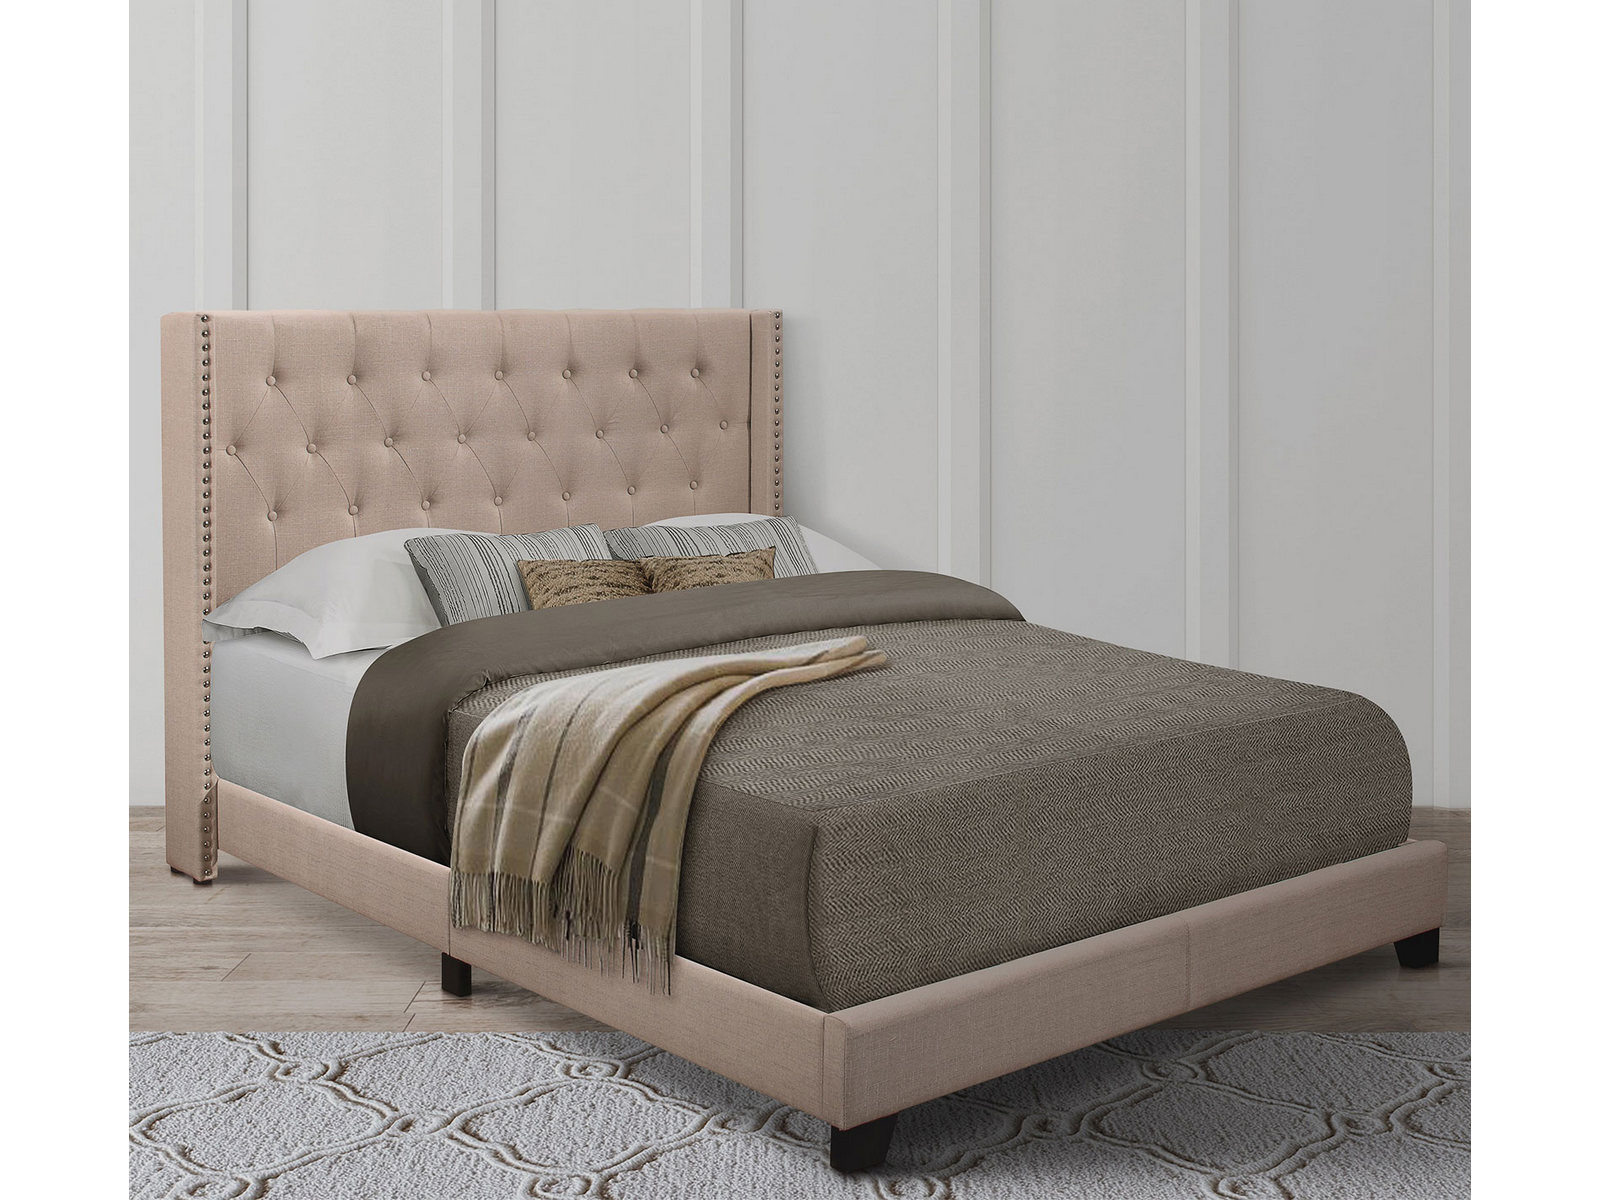 Homelegance Upholstered Bed Set | Full | Avery Bed Frame & Headboard | Beige